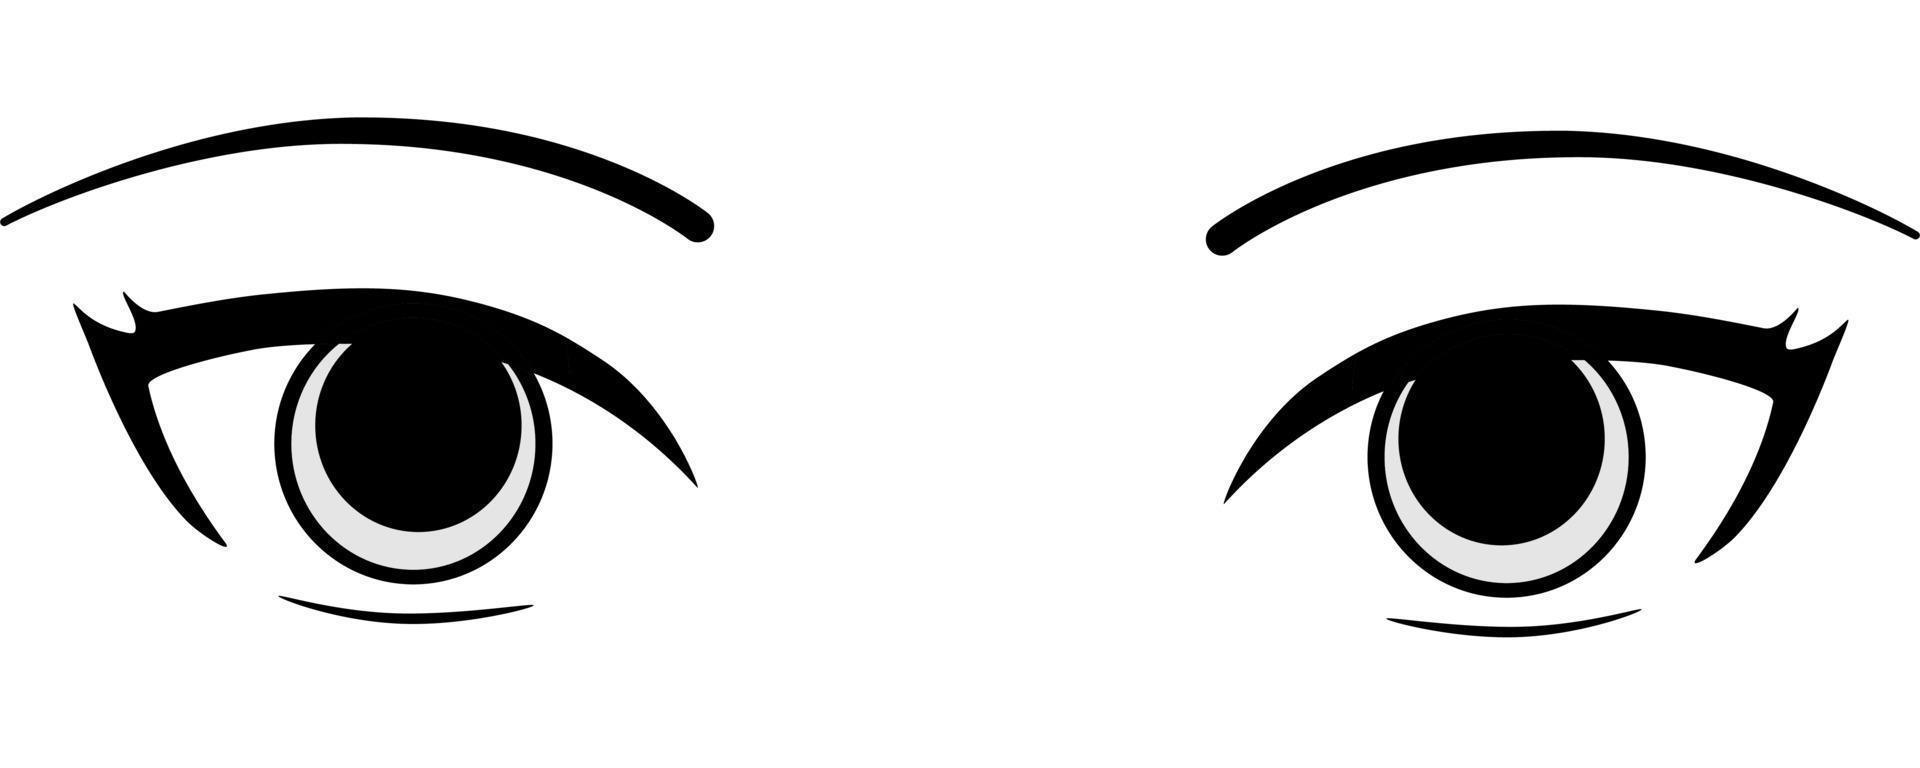 bunte Boho-Augen-Kollektion isoliert auf weißem, modernem Design, Cartoon-Frauenaugen und Augenbrauen mit Wimpern. isolierte Vektorillustration. kann für T-Shirt-Druck, Poster und Karten verwendet werden. Cartoon-Auge vektor